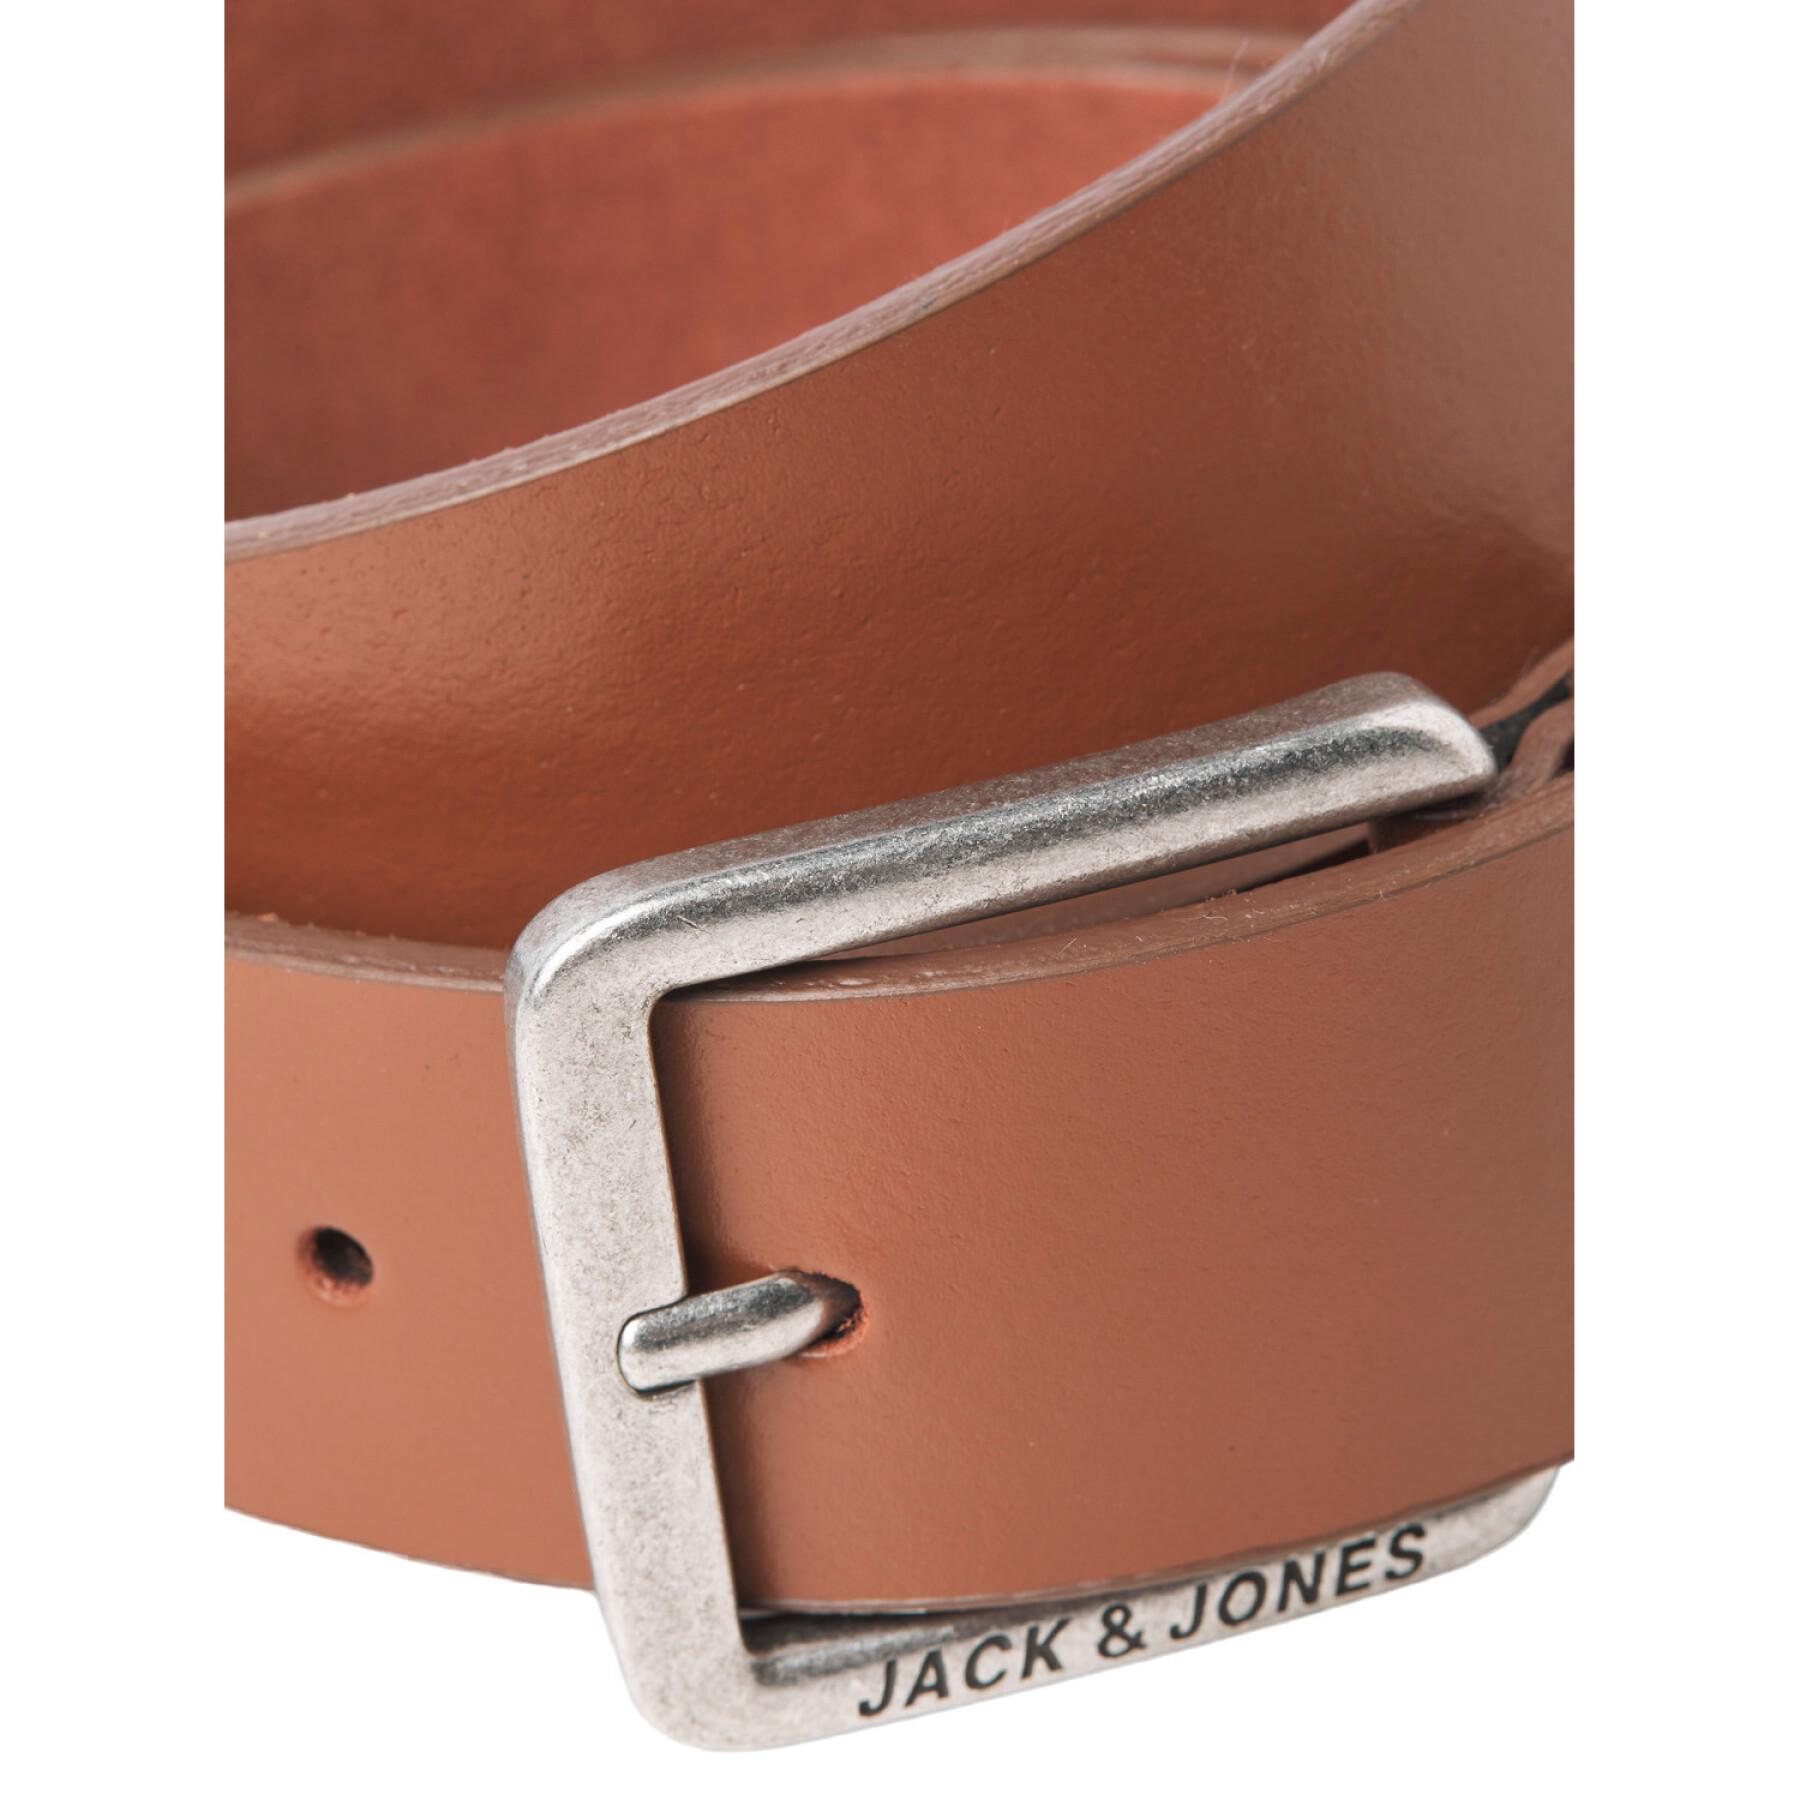 Cinturón Jack & Jones Jacespo